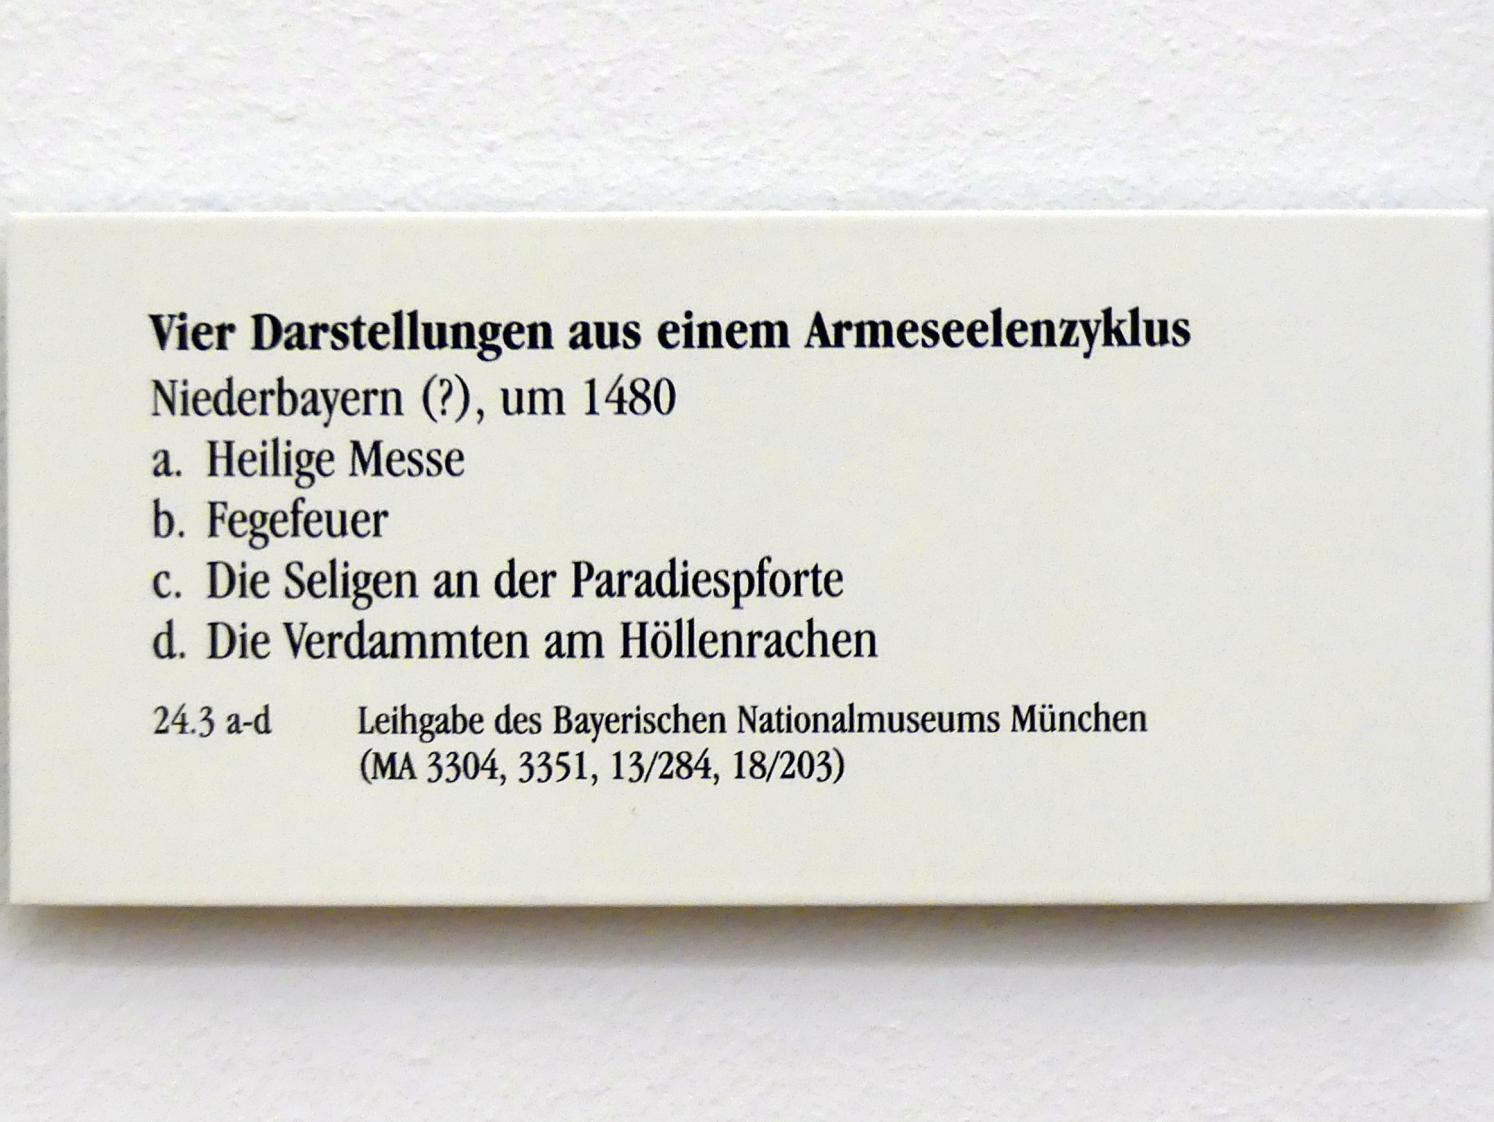 Die Verdammten am Höllenrachen, Regensburg, Historisches Museum, um 1480, Bild 2/2